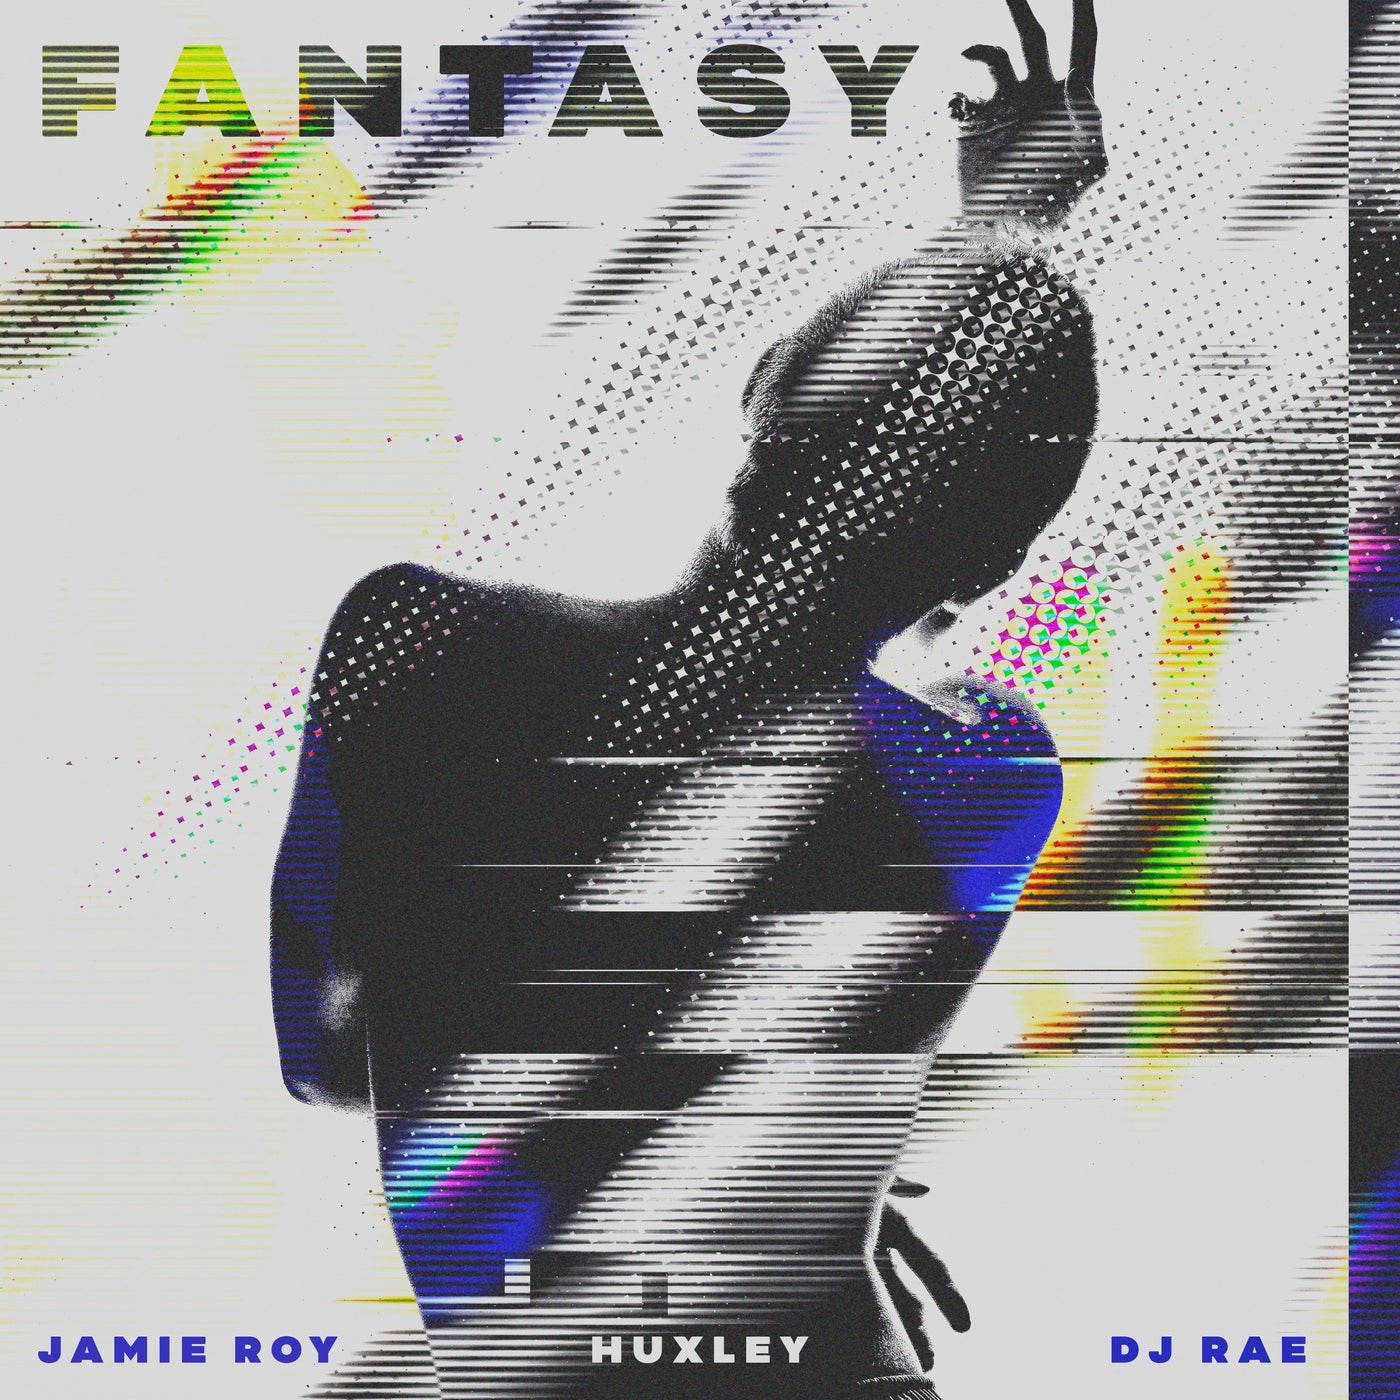 Huxley, Jamie Roy, DJ Rae - Fantasy (Extended Mix)